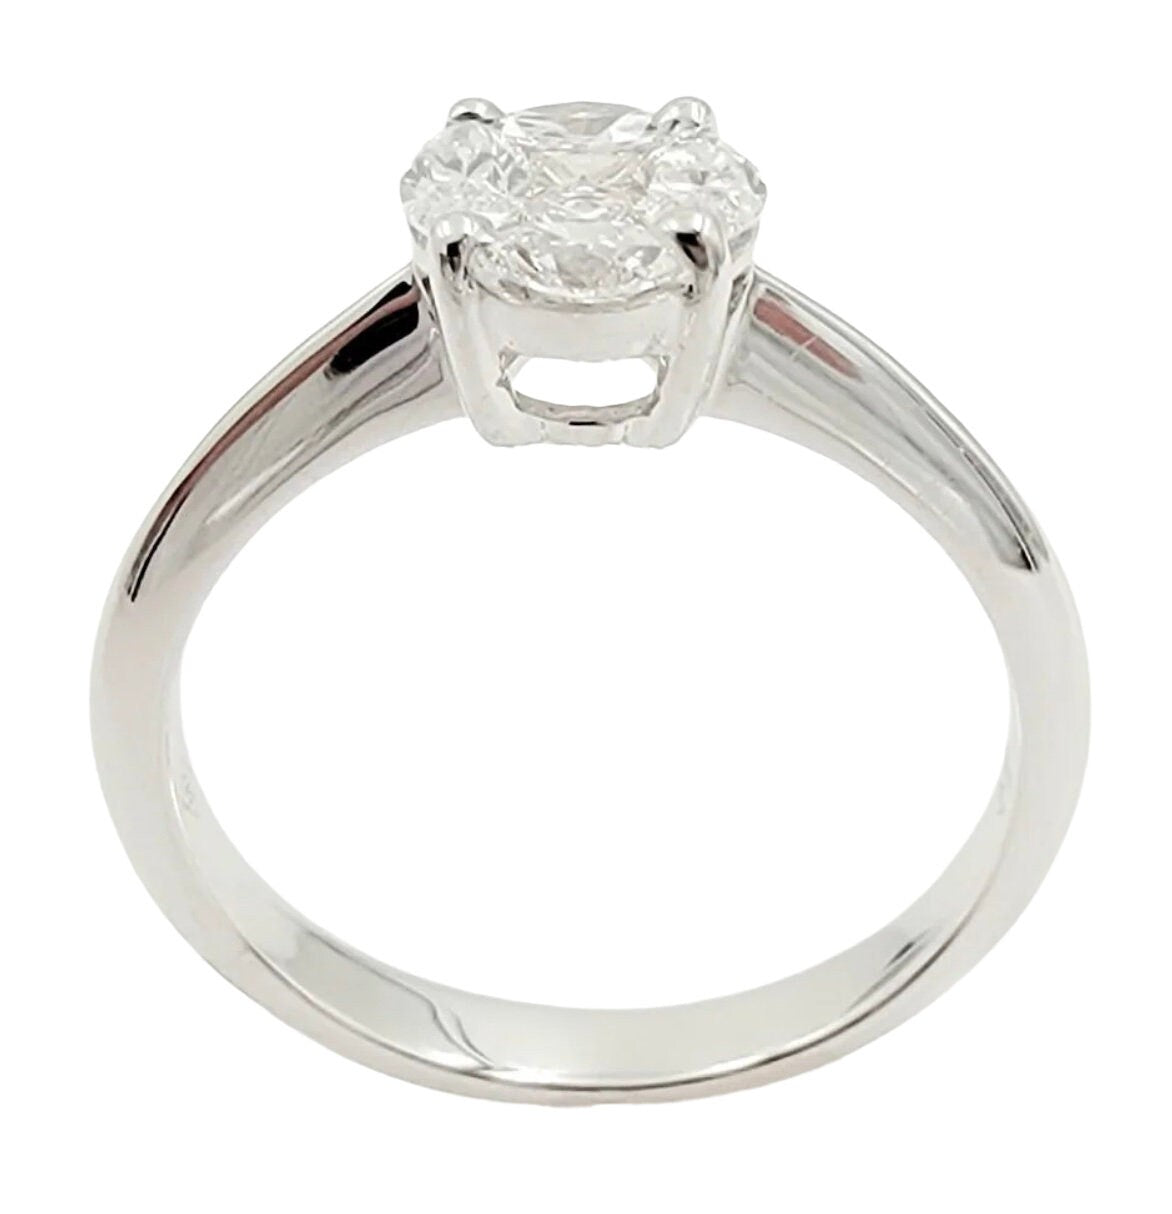 18k White Gold Diamond Cluster Ring